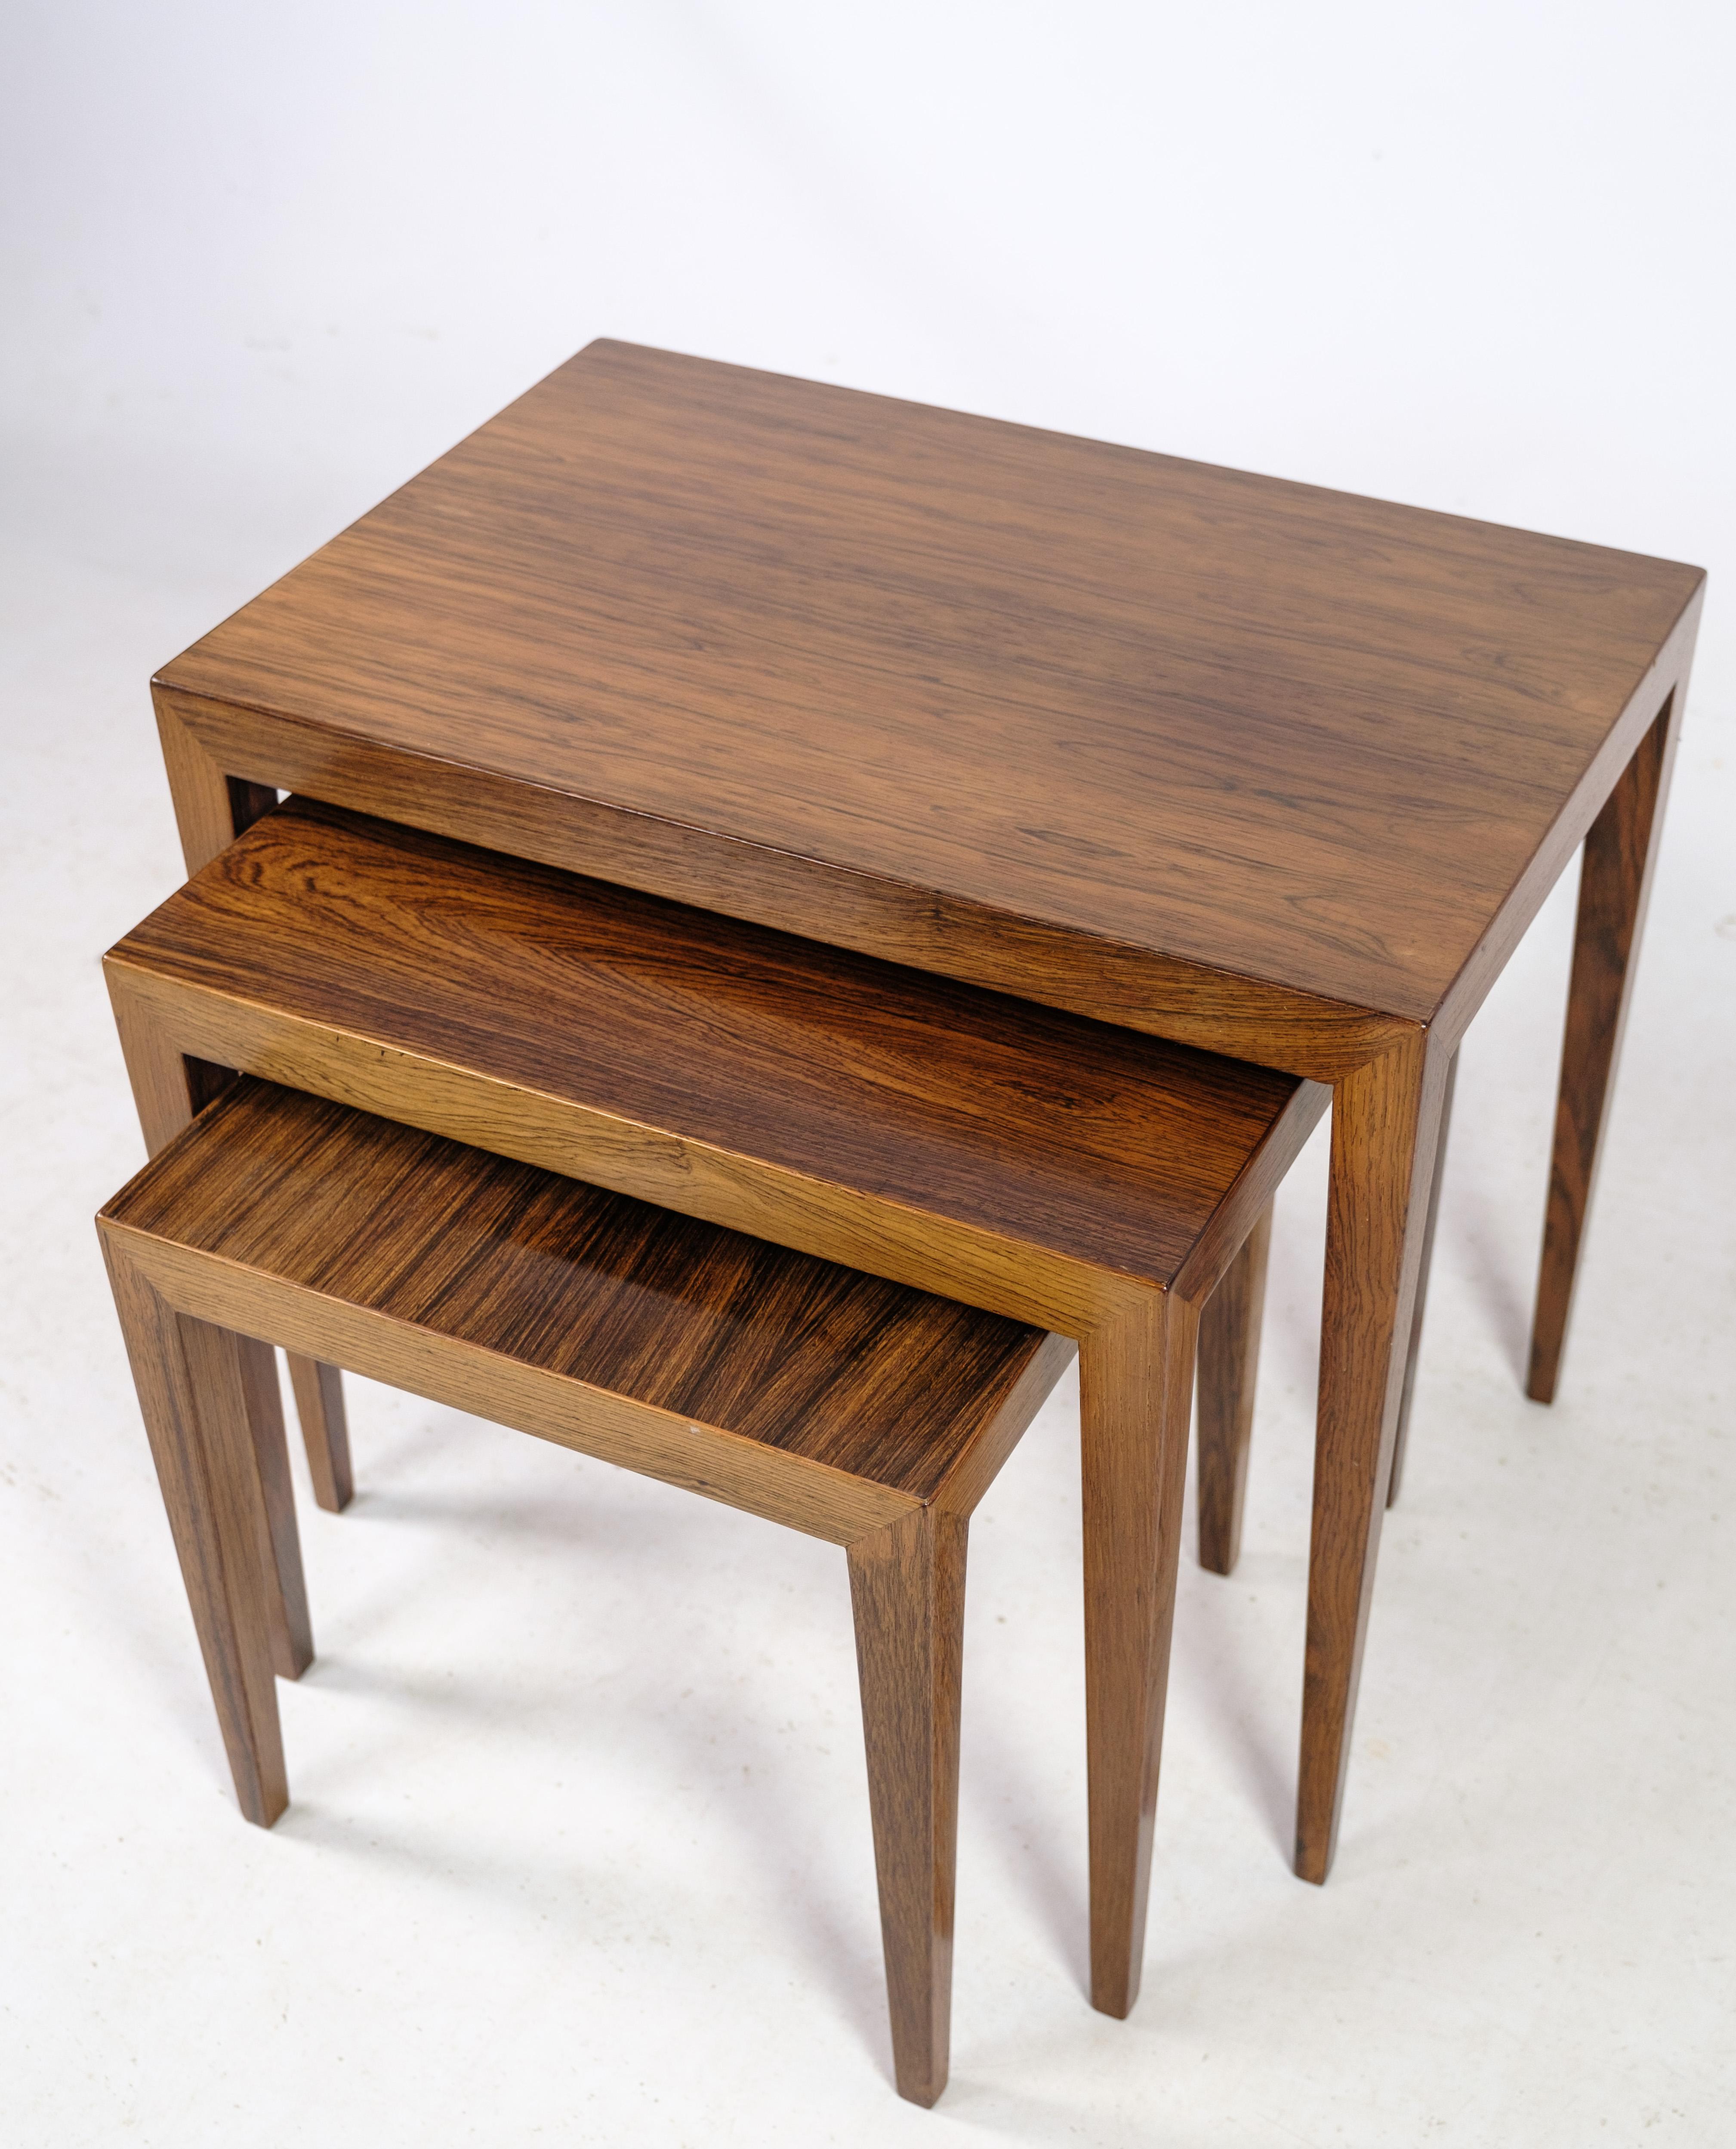 Diese von Severin Hansen entworfenen und aus Palisanderholz gefertigten Beistelltische bieten eine zeitlose Mischung aus Eleganz und Funktionalität. Die Tische wurden in den 1960er Jahren in der Haslev Møbelfabrik hergestellt und tragen den